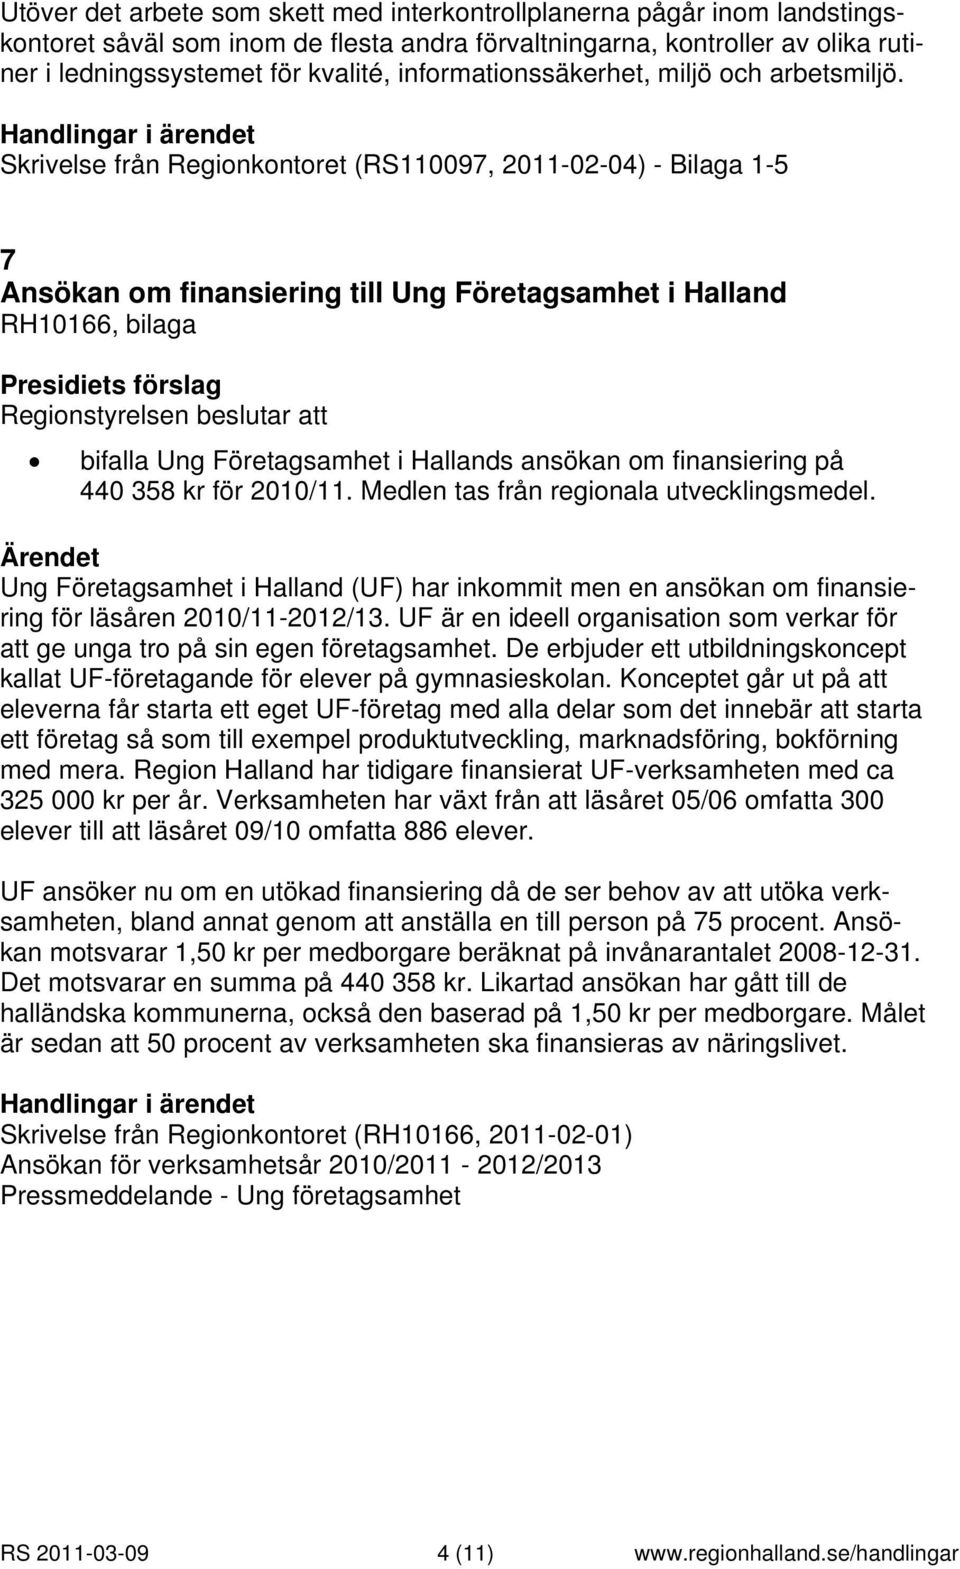 Skrivelse från Regionkontoret (RS110097, 2011-02-04) - Bilaga 1-5 7 Ansökan om finansiering till Ung Företagsamhet i Halland RH10166, bilaga bifalla Ung Företagsamhet i Hallands ansökan om